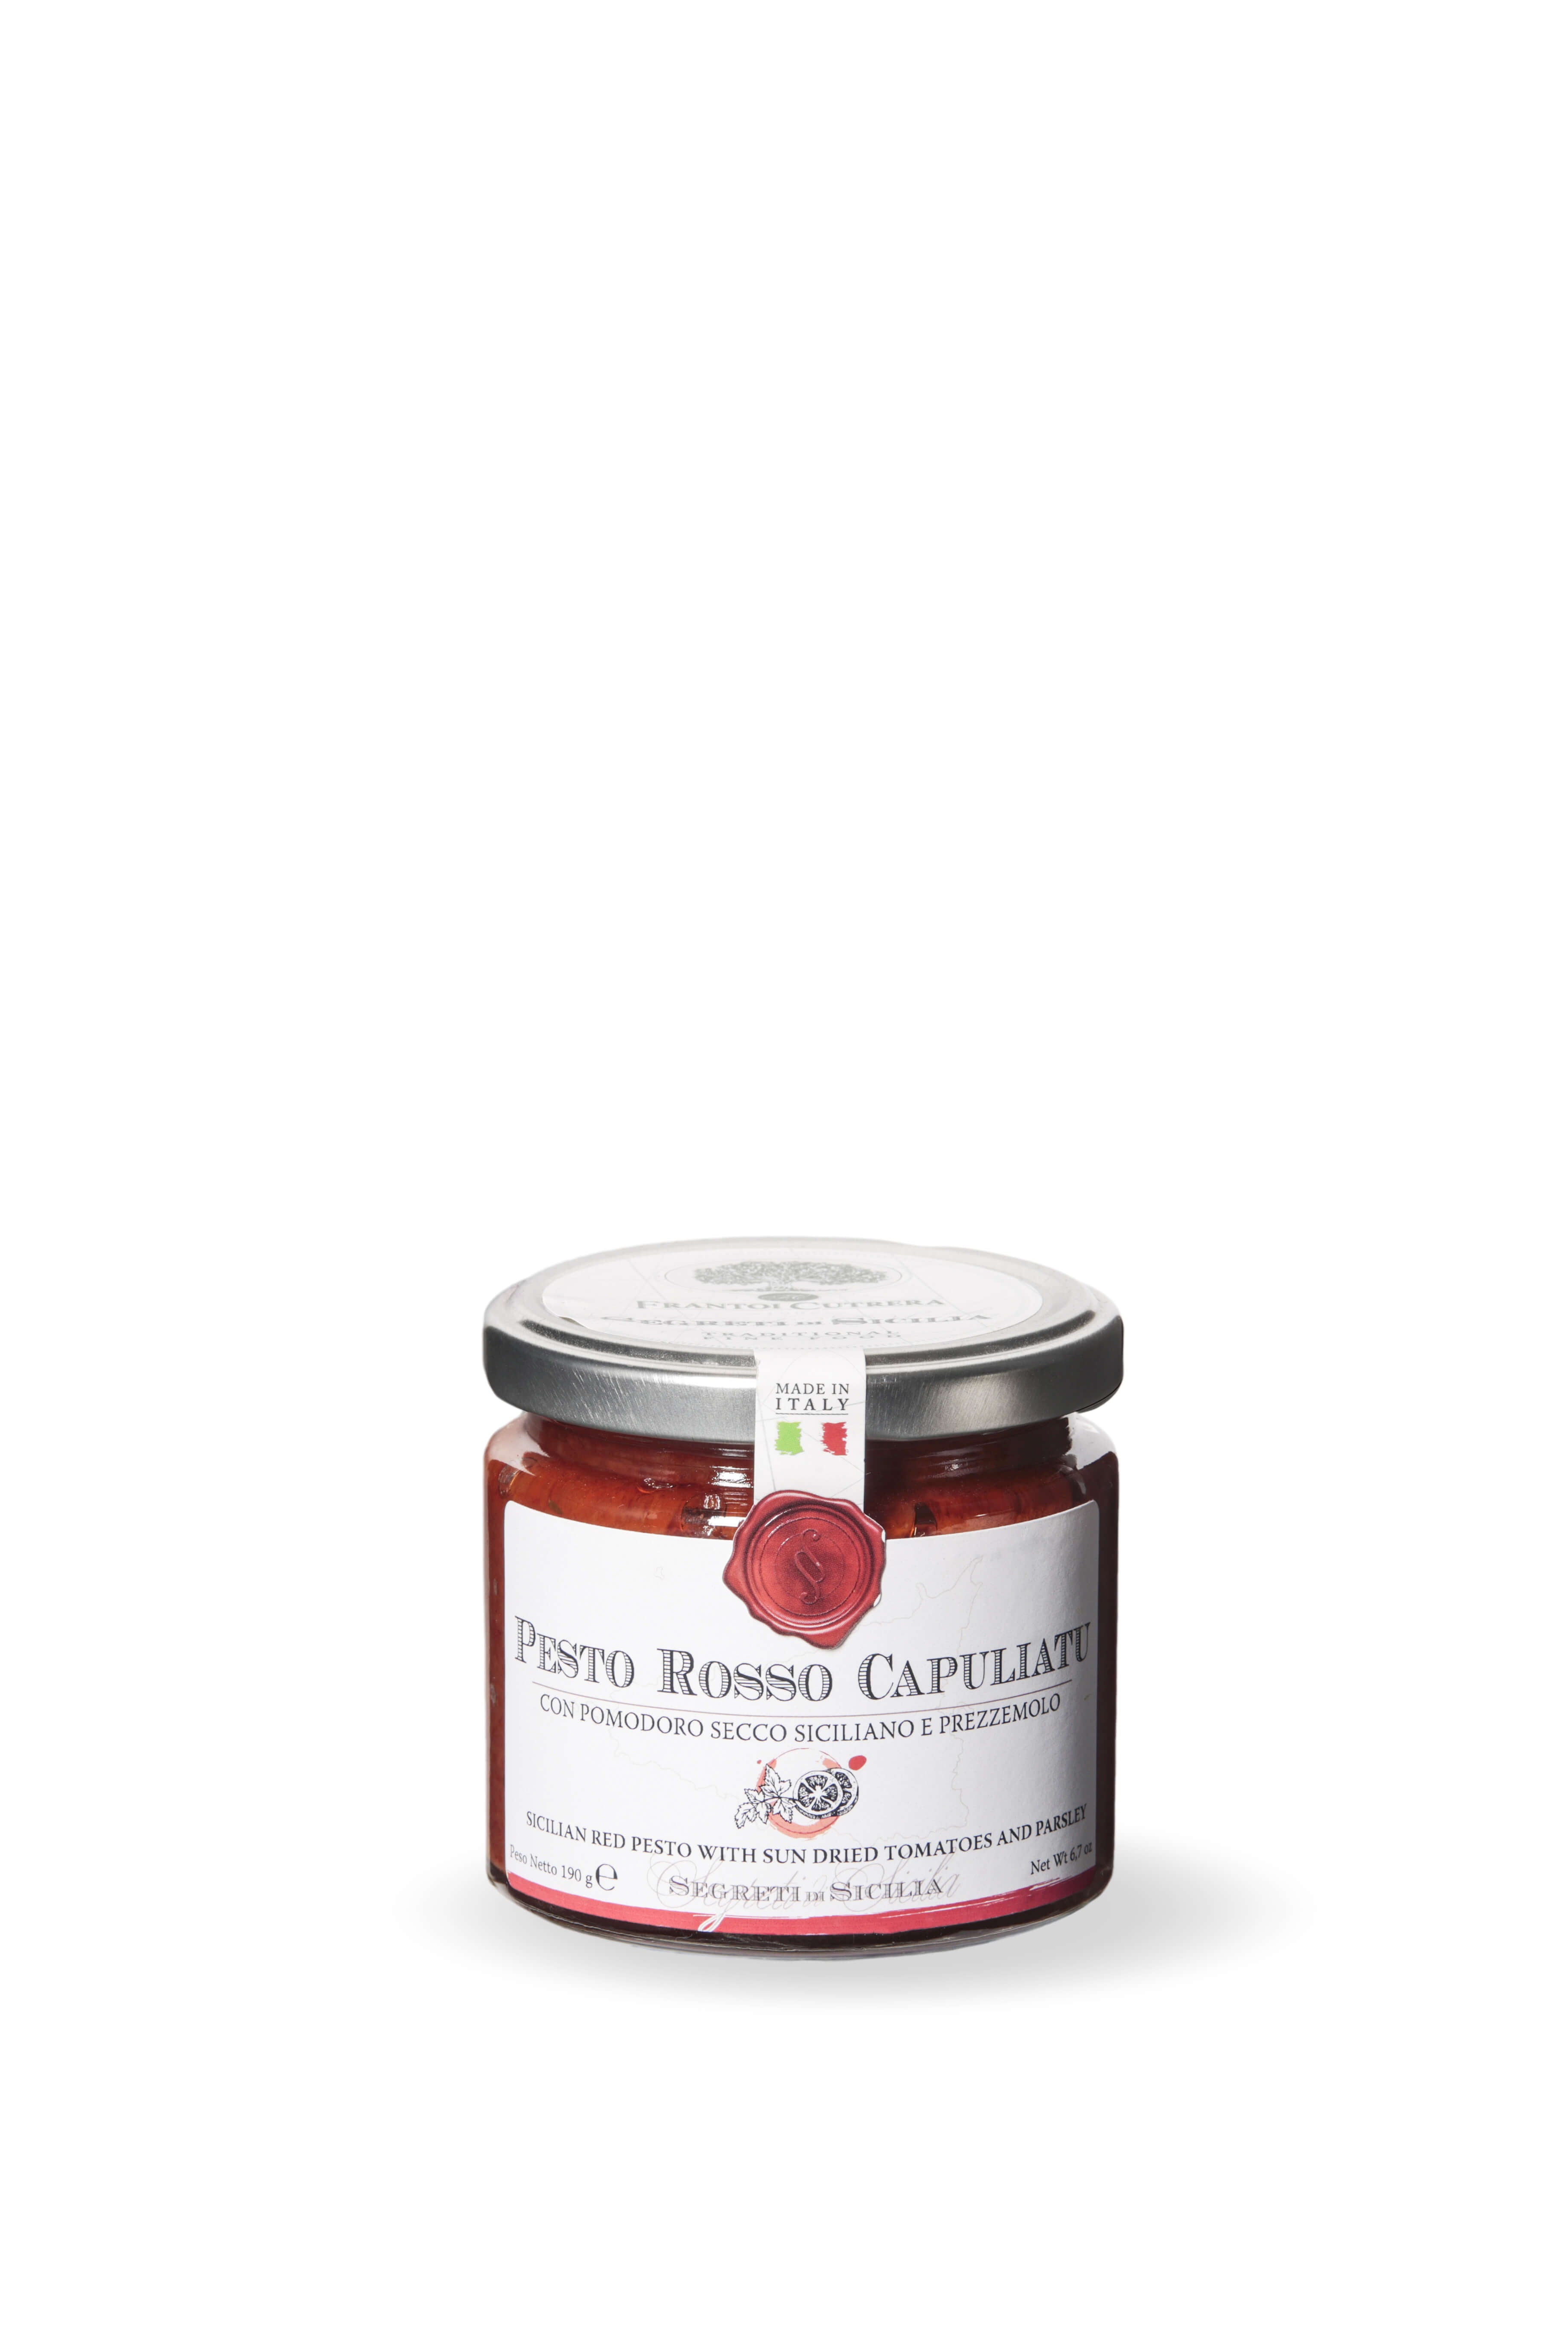 Capuliatu Red Pesto – Secrets of Sicily